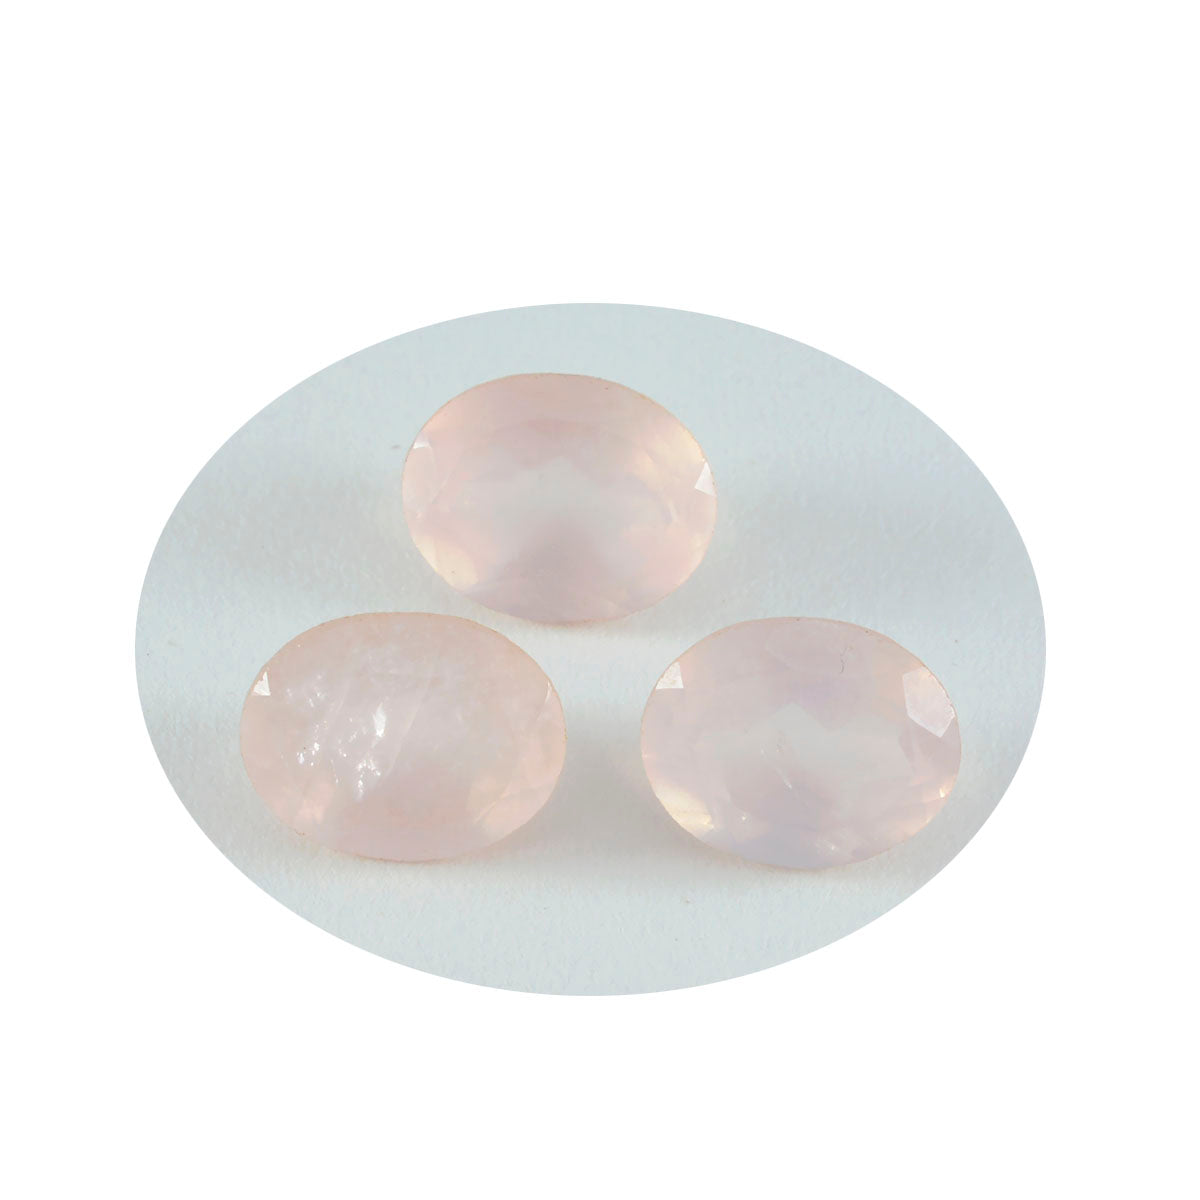 riyogems 1pc quartz rose à facettes 12x16 mm forme ovale qualité surprenante pierre précieuse en vrac